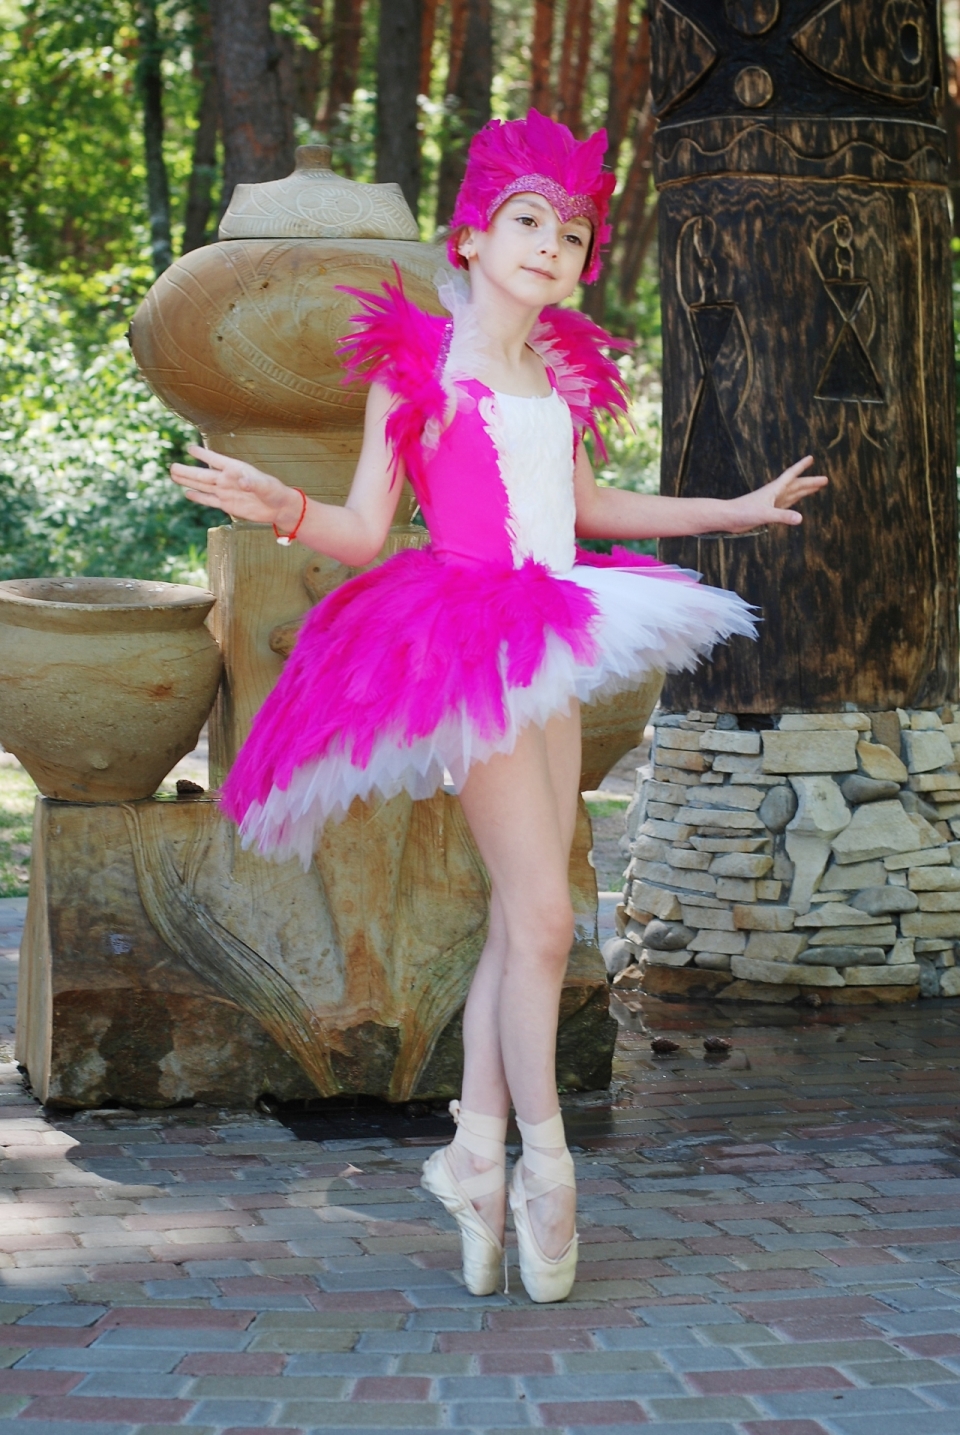 广场上穿着粉色芭蕾舞裙起舞的女孩